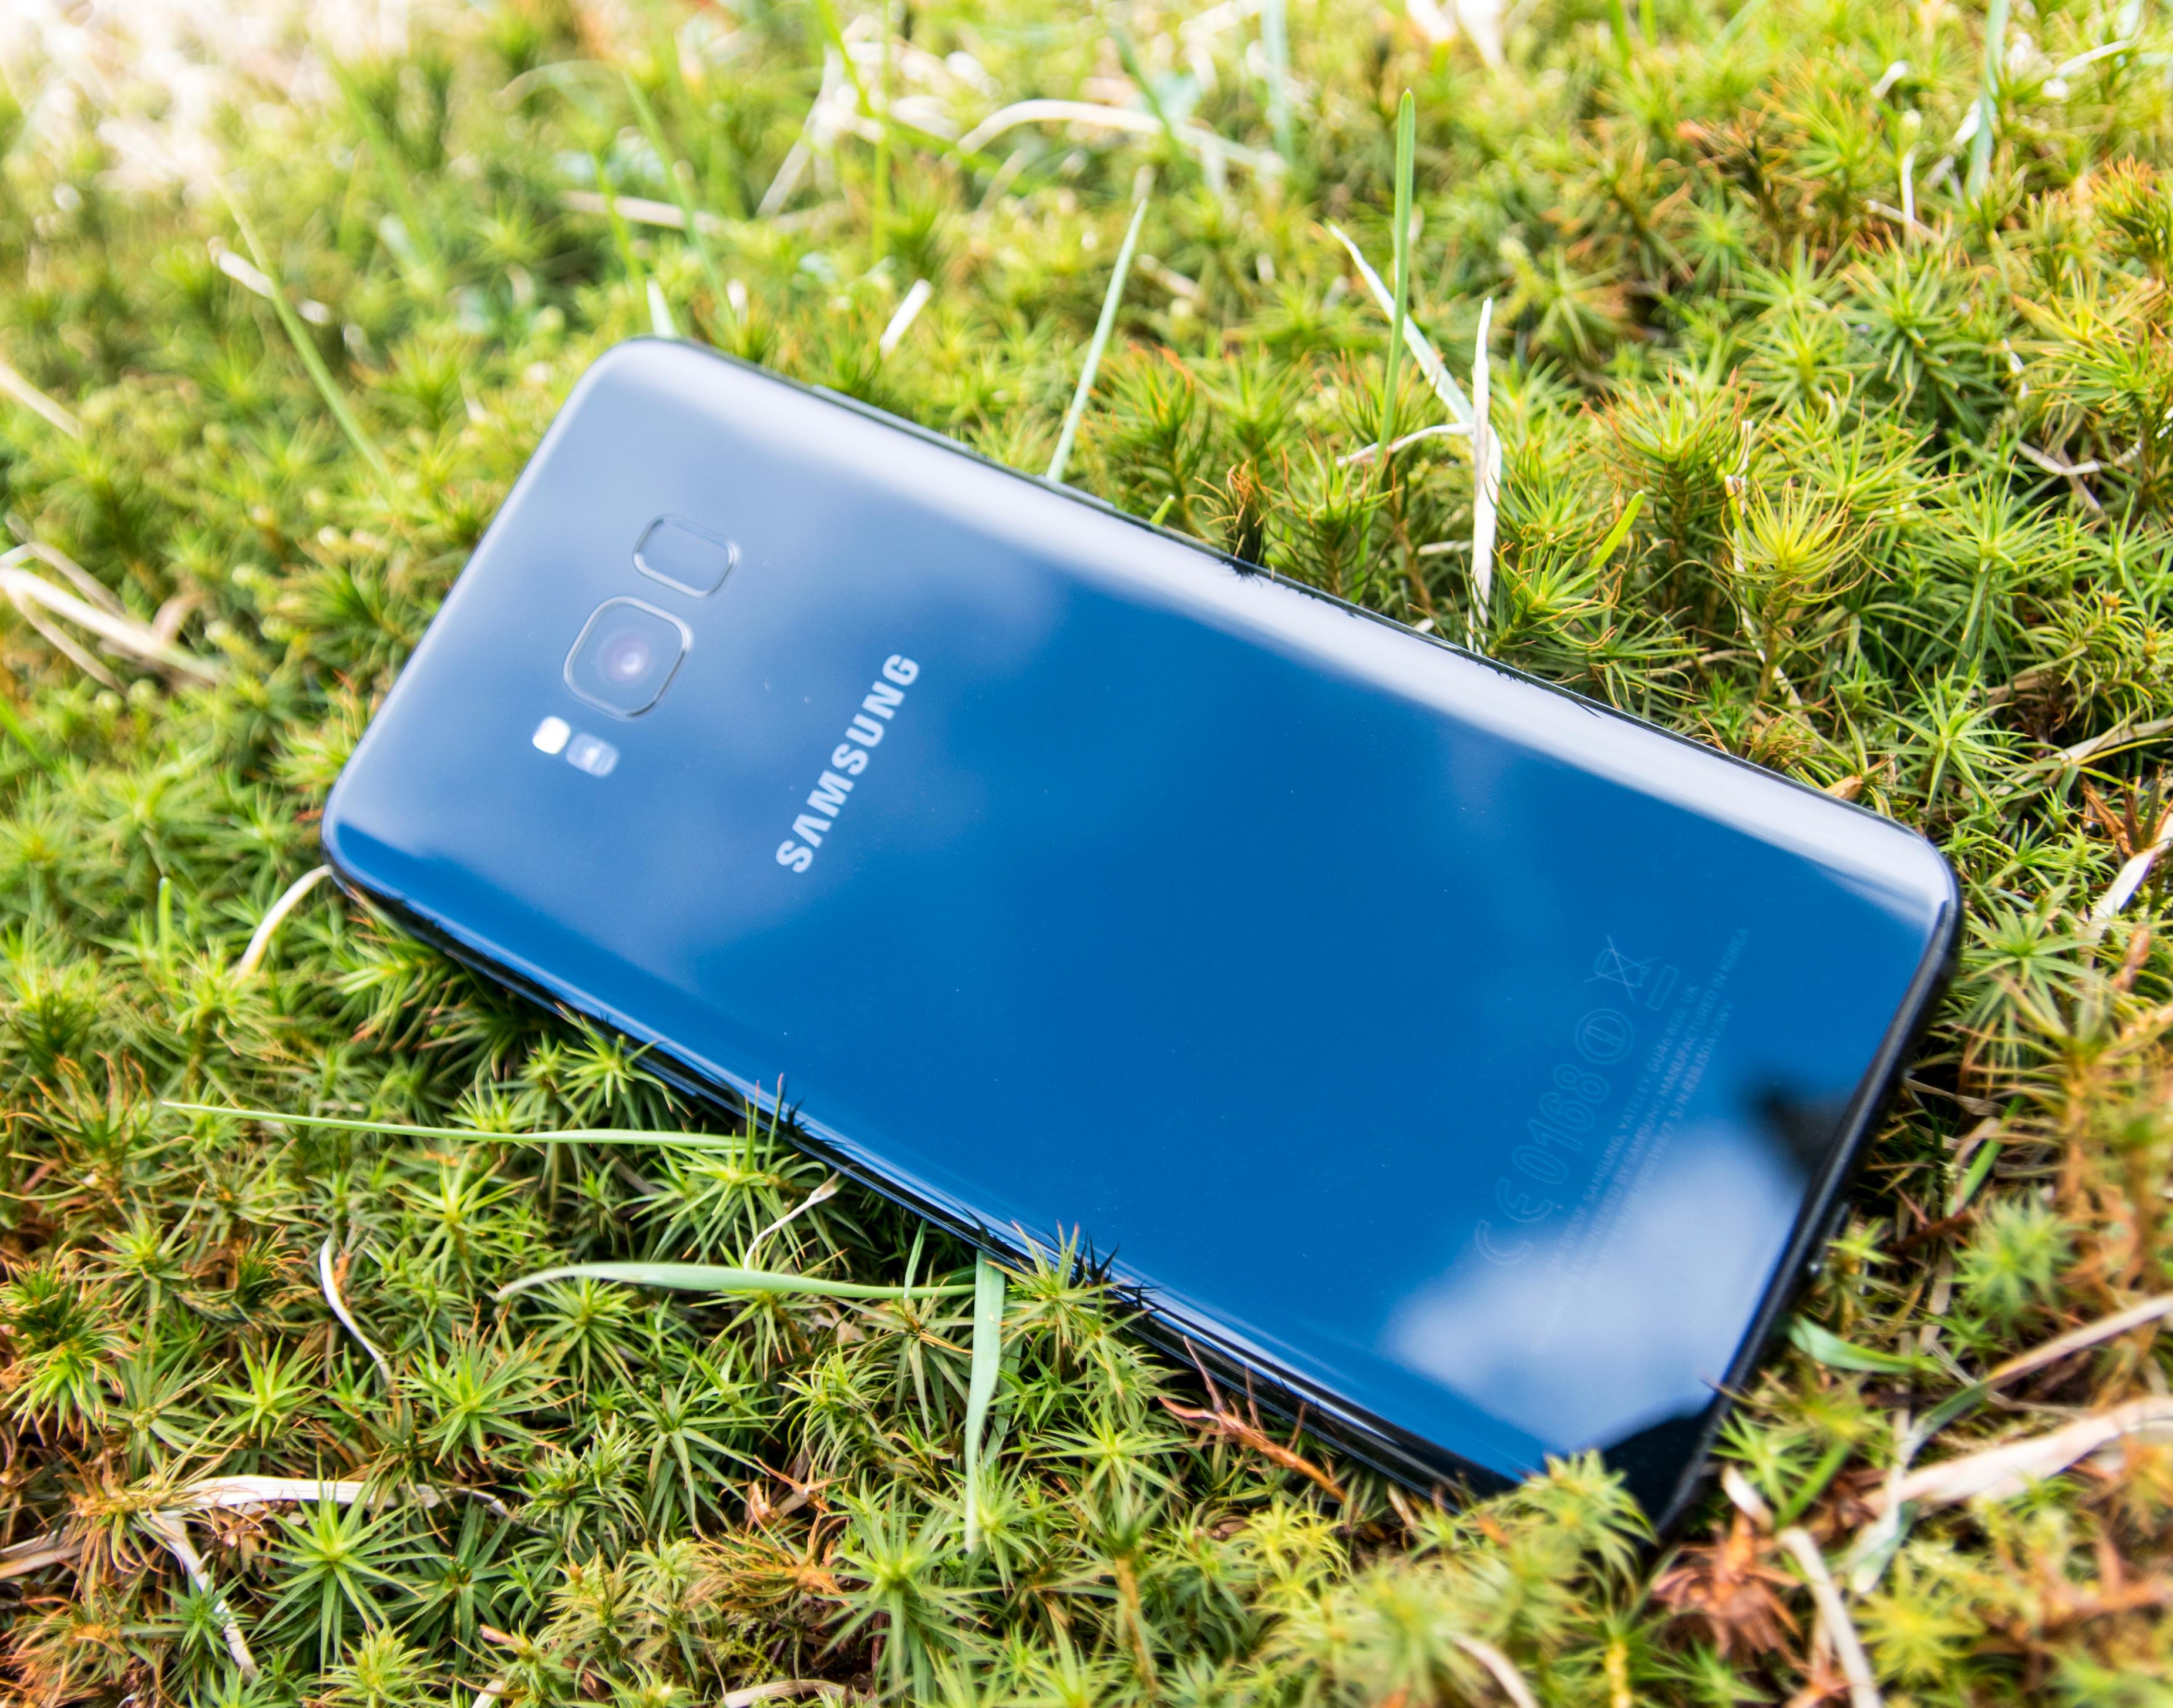 Baksiden av telefonen likner mye på den du kanskje kjenner fra Galaxy S7. Unntaket er fingersensoren ved siden av kameraet. Det er en litt uheldig plassering.